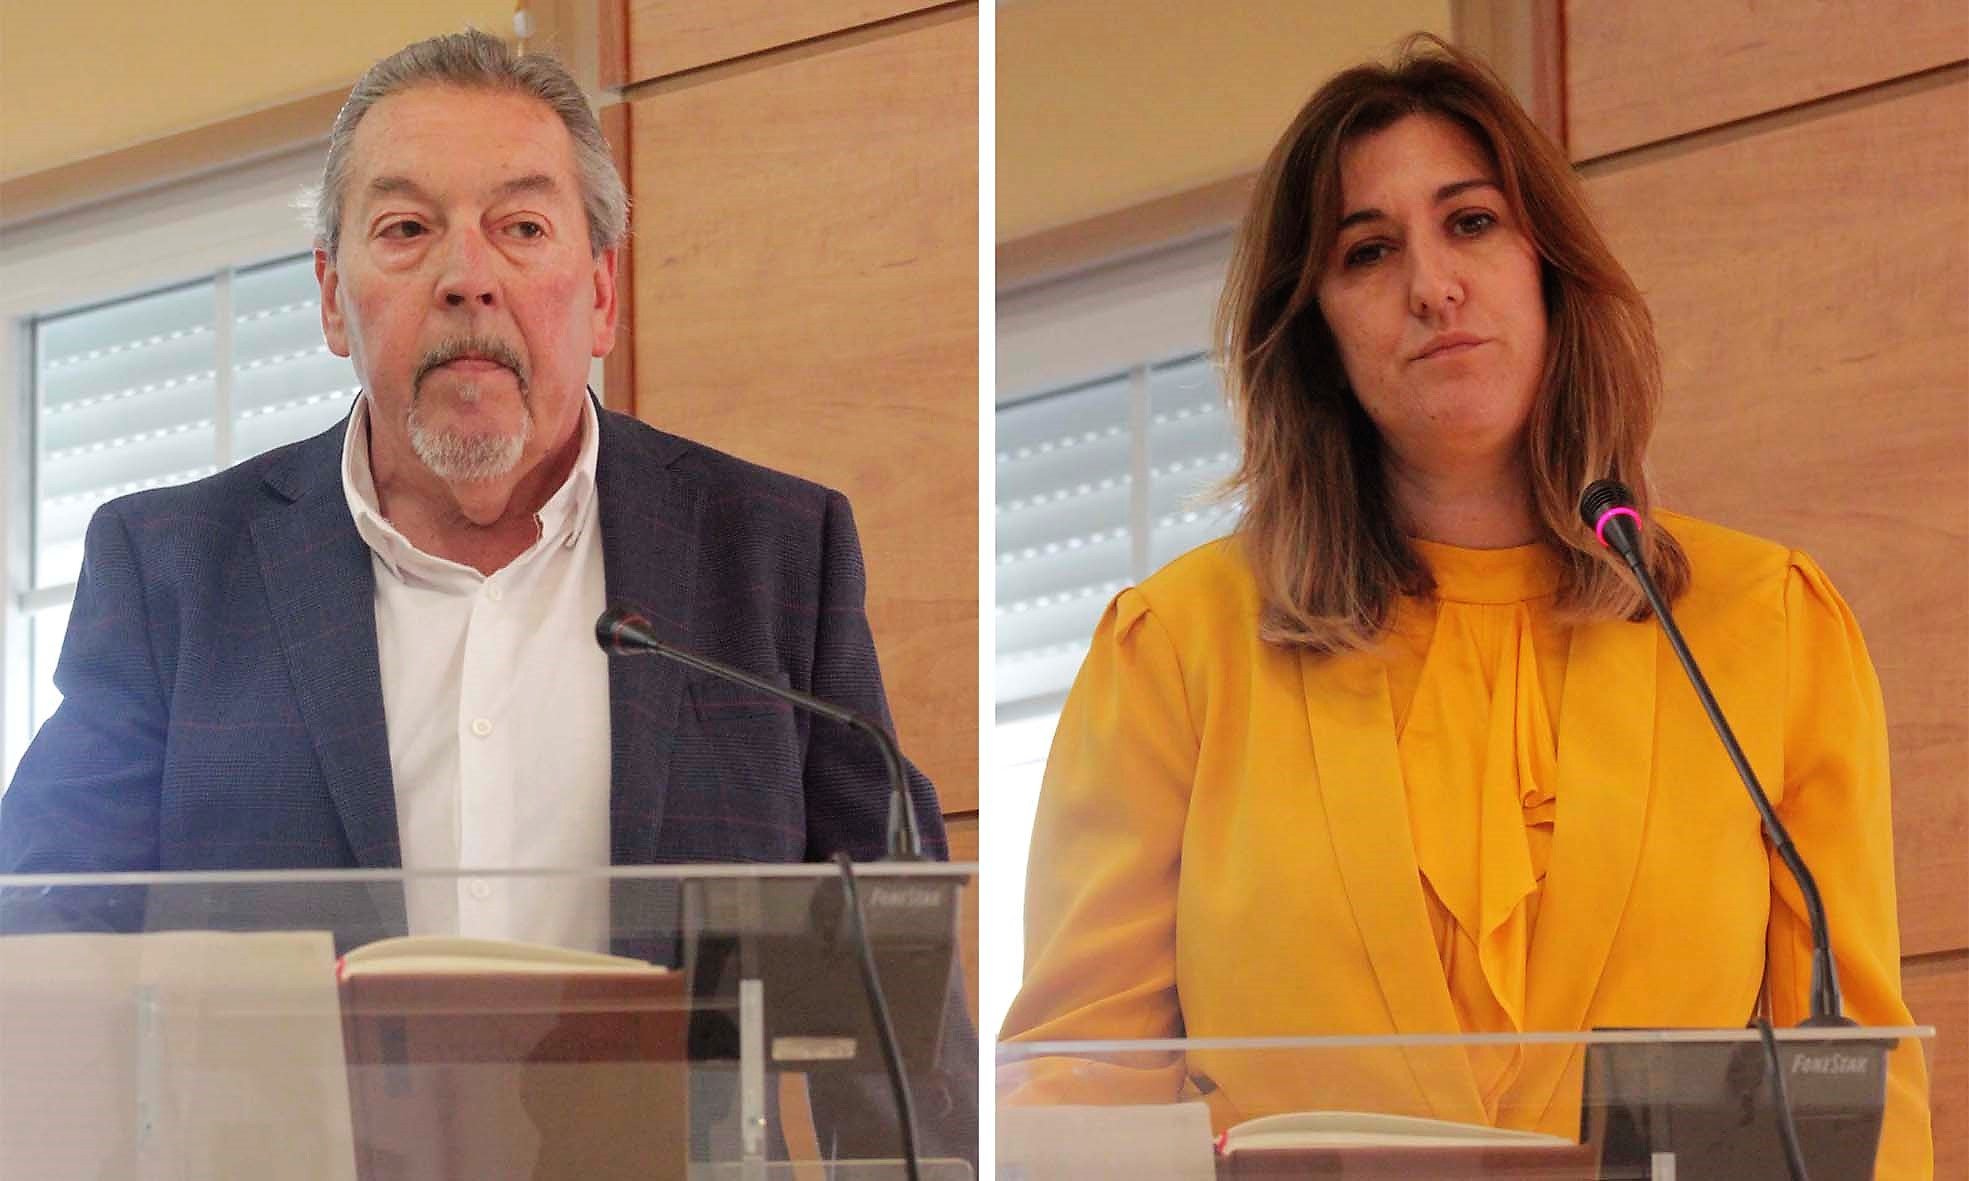 Los dos concejales elegidos en la candidatura de Ciudadanos en Cabanillas del Campo y que ahora han abandonado el partido pero no sus actas.